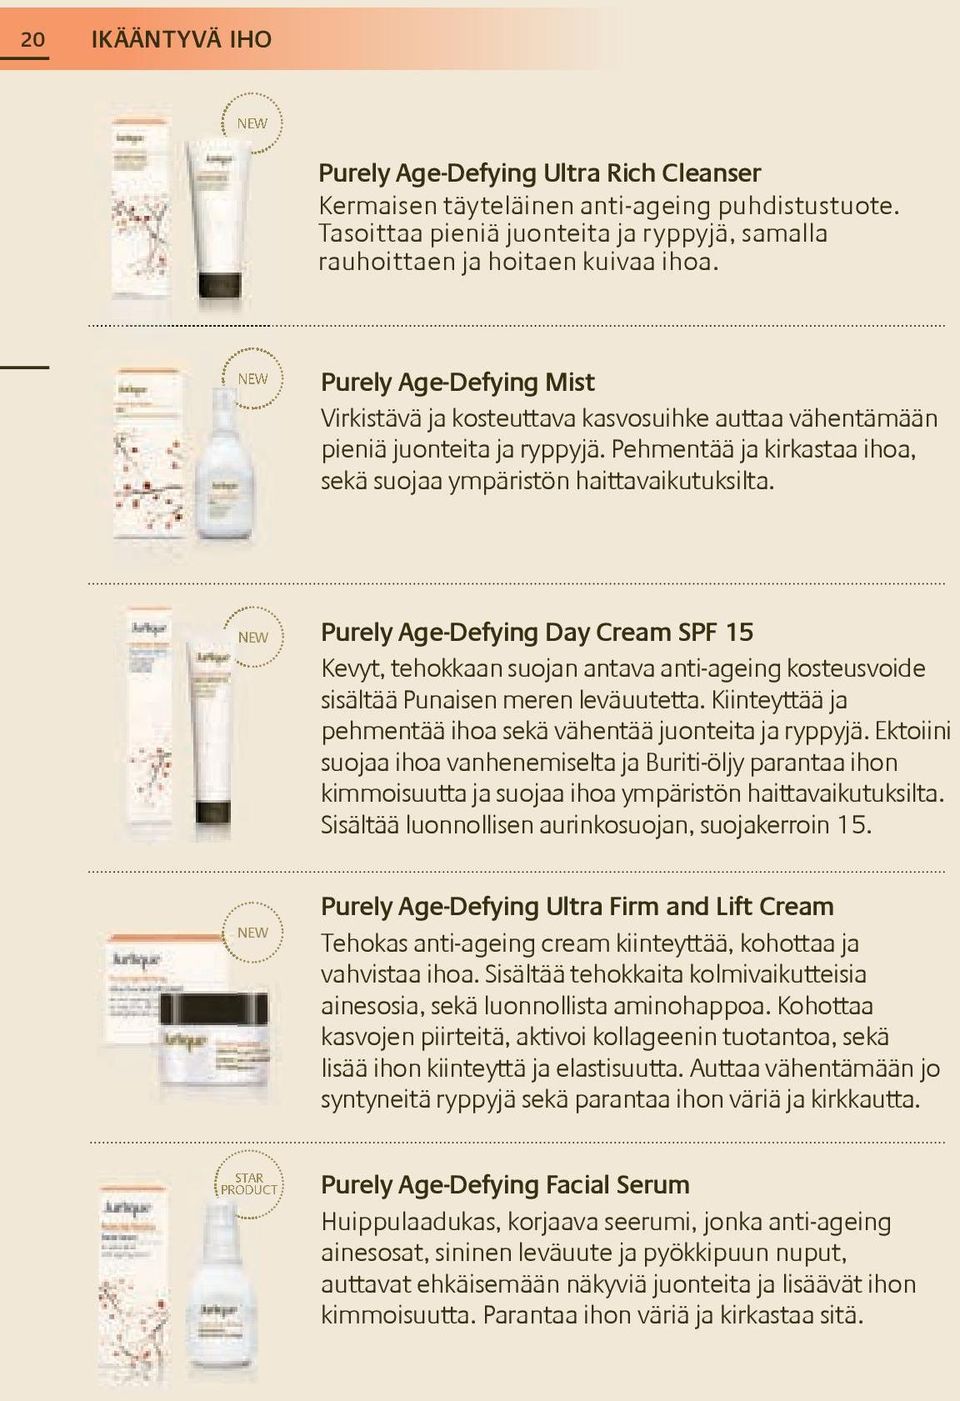 NEW Purely Age-Defying Day Cream SPF 15 Kevyt, tehokkaan suojan antava anti-ageing kosteusvoide sisältää Punaisen meren leväuutetta. Kiinteyttää ja pehmentää ihoa sekä vähentää juonteita ja ryppyjä.